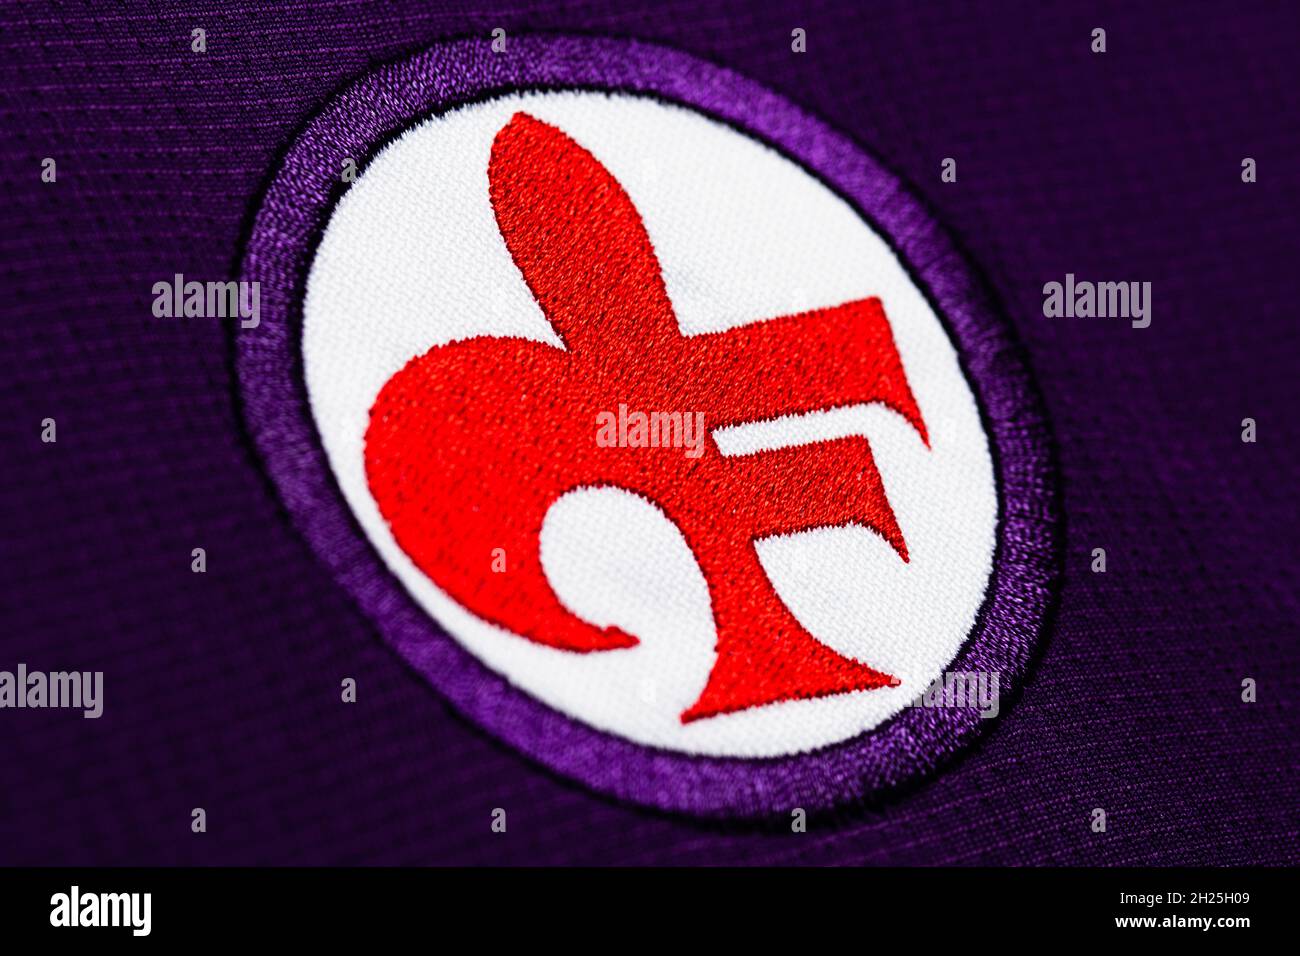 Close up of Fiorentina club crest. Stock Photo